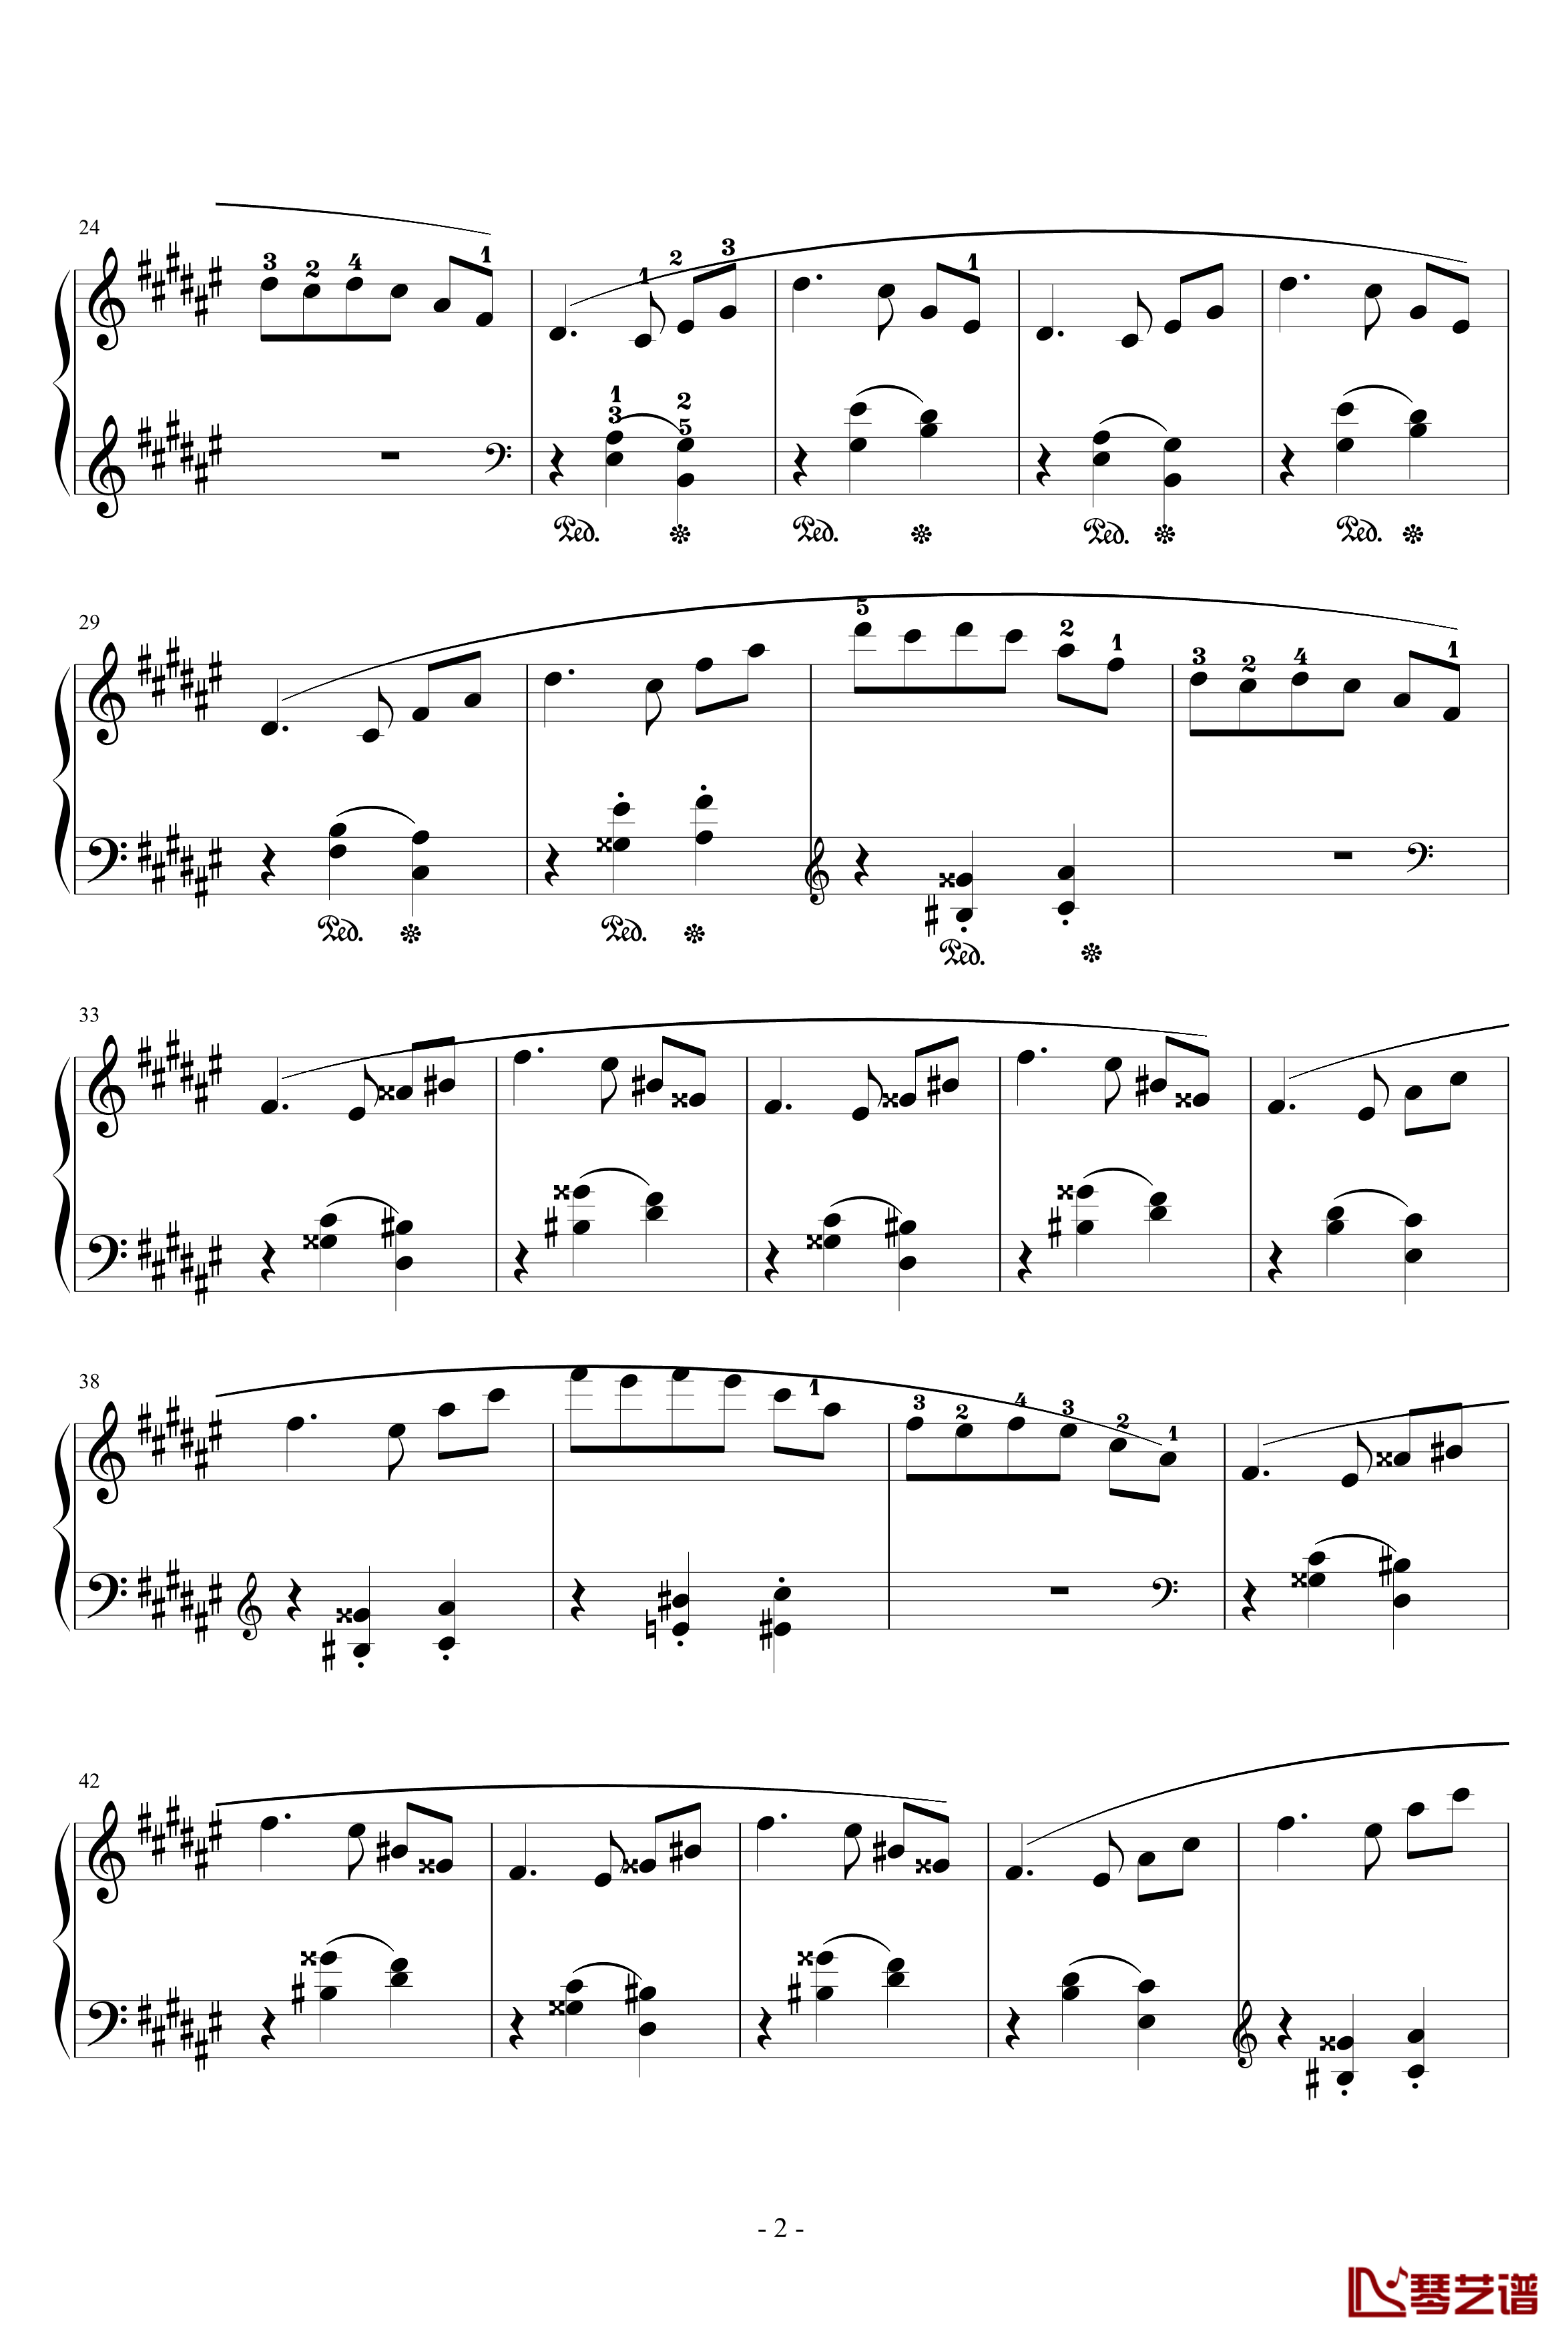 第一首被遗忘的圆舞曲钢琴谱-第一部分-李斯特2